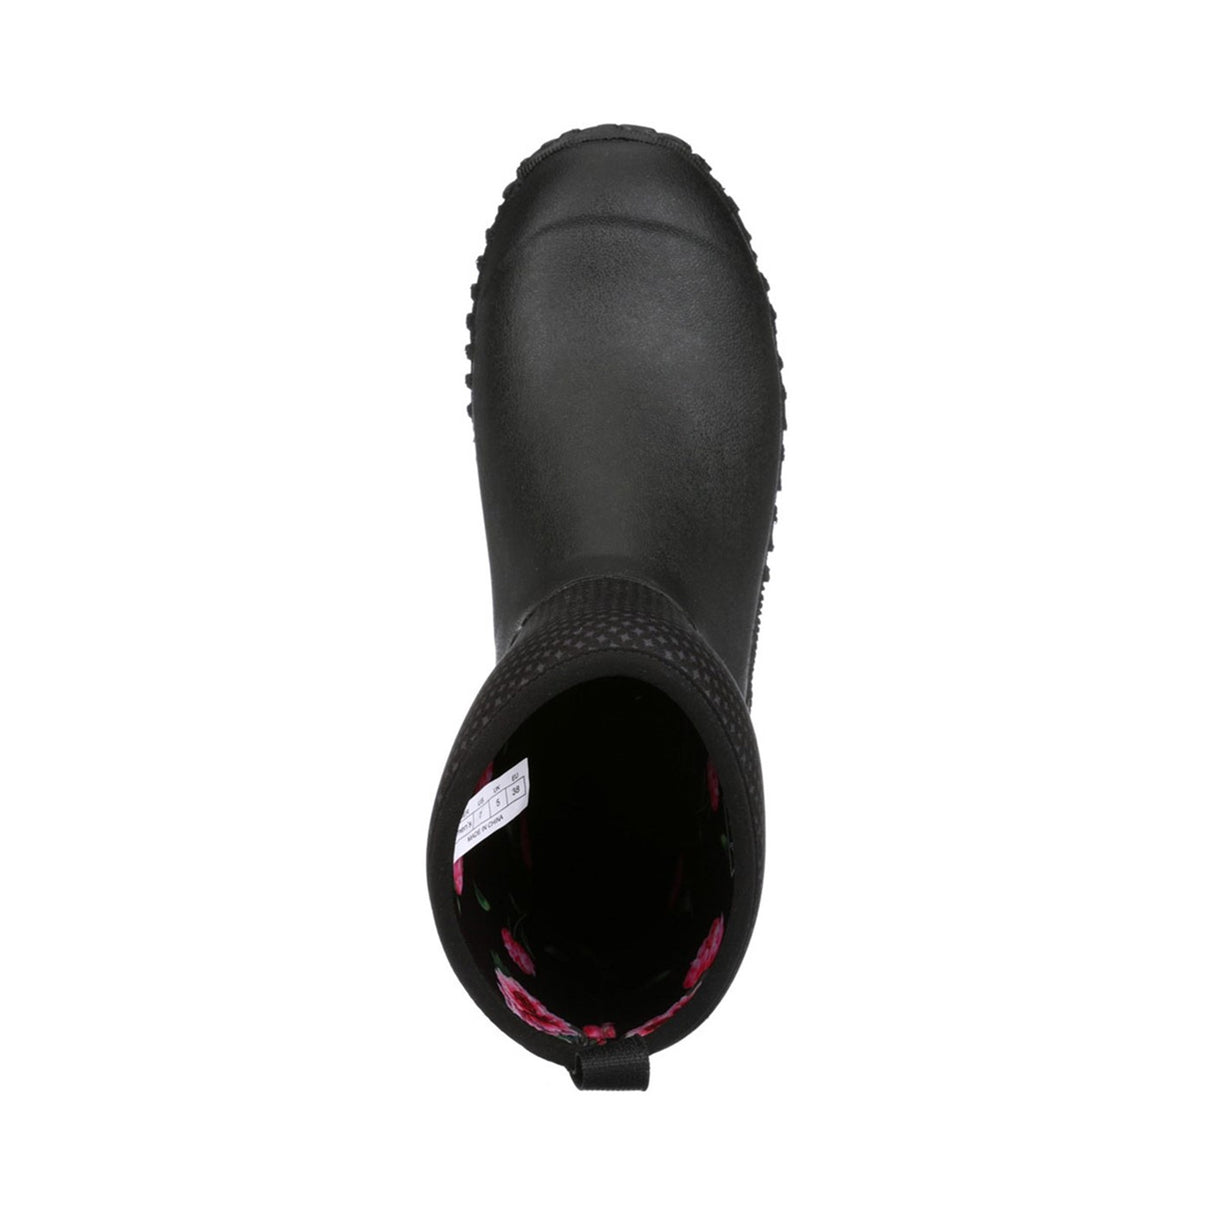 Women's RHS Muckster II Short Boots Charcoal Print